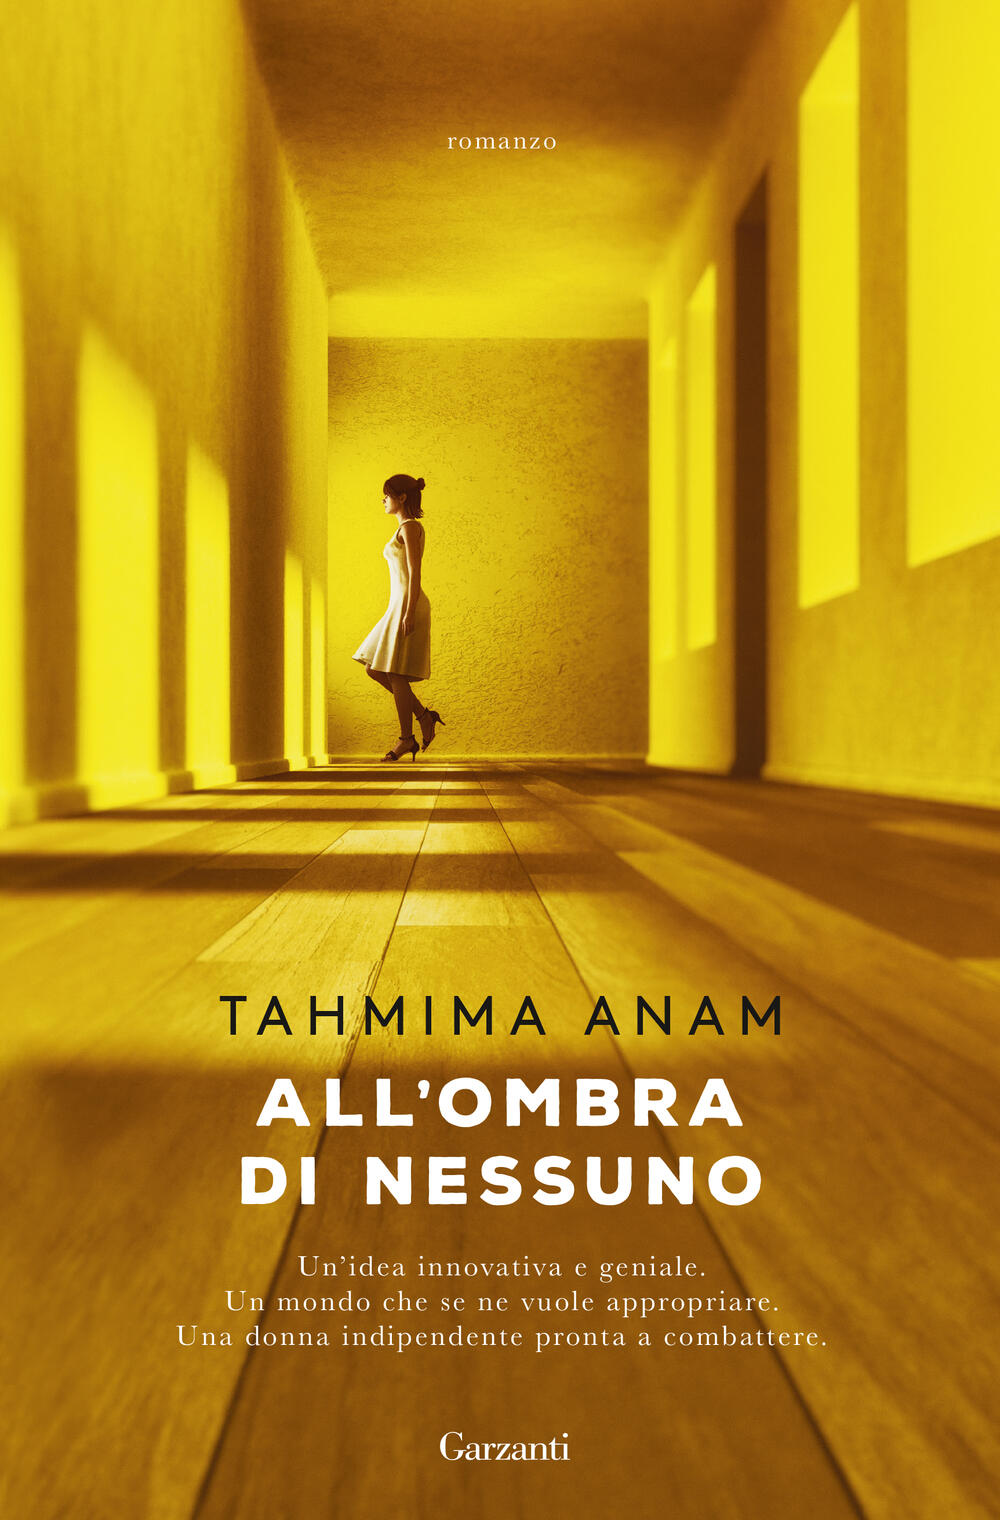 All'ombra di nessuno&quot; di Tahmima Anam - Cartonato - NARRATORI MODERNI - Il  Libraio